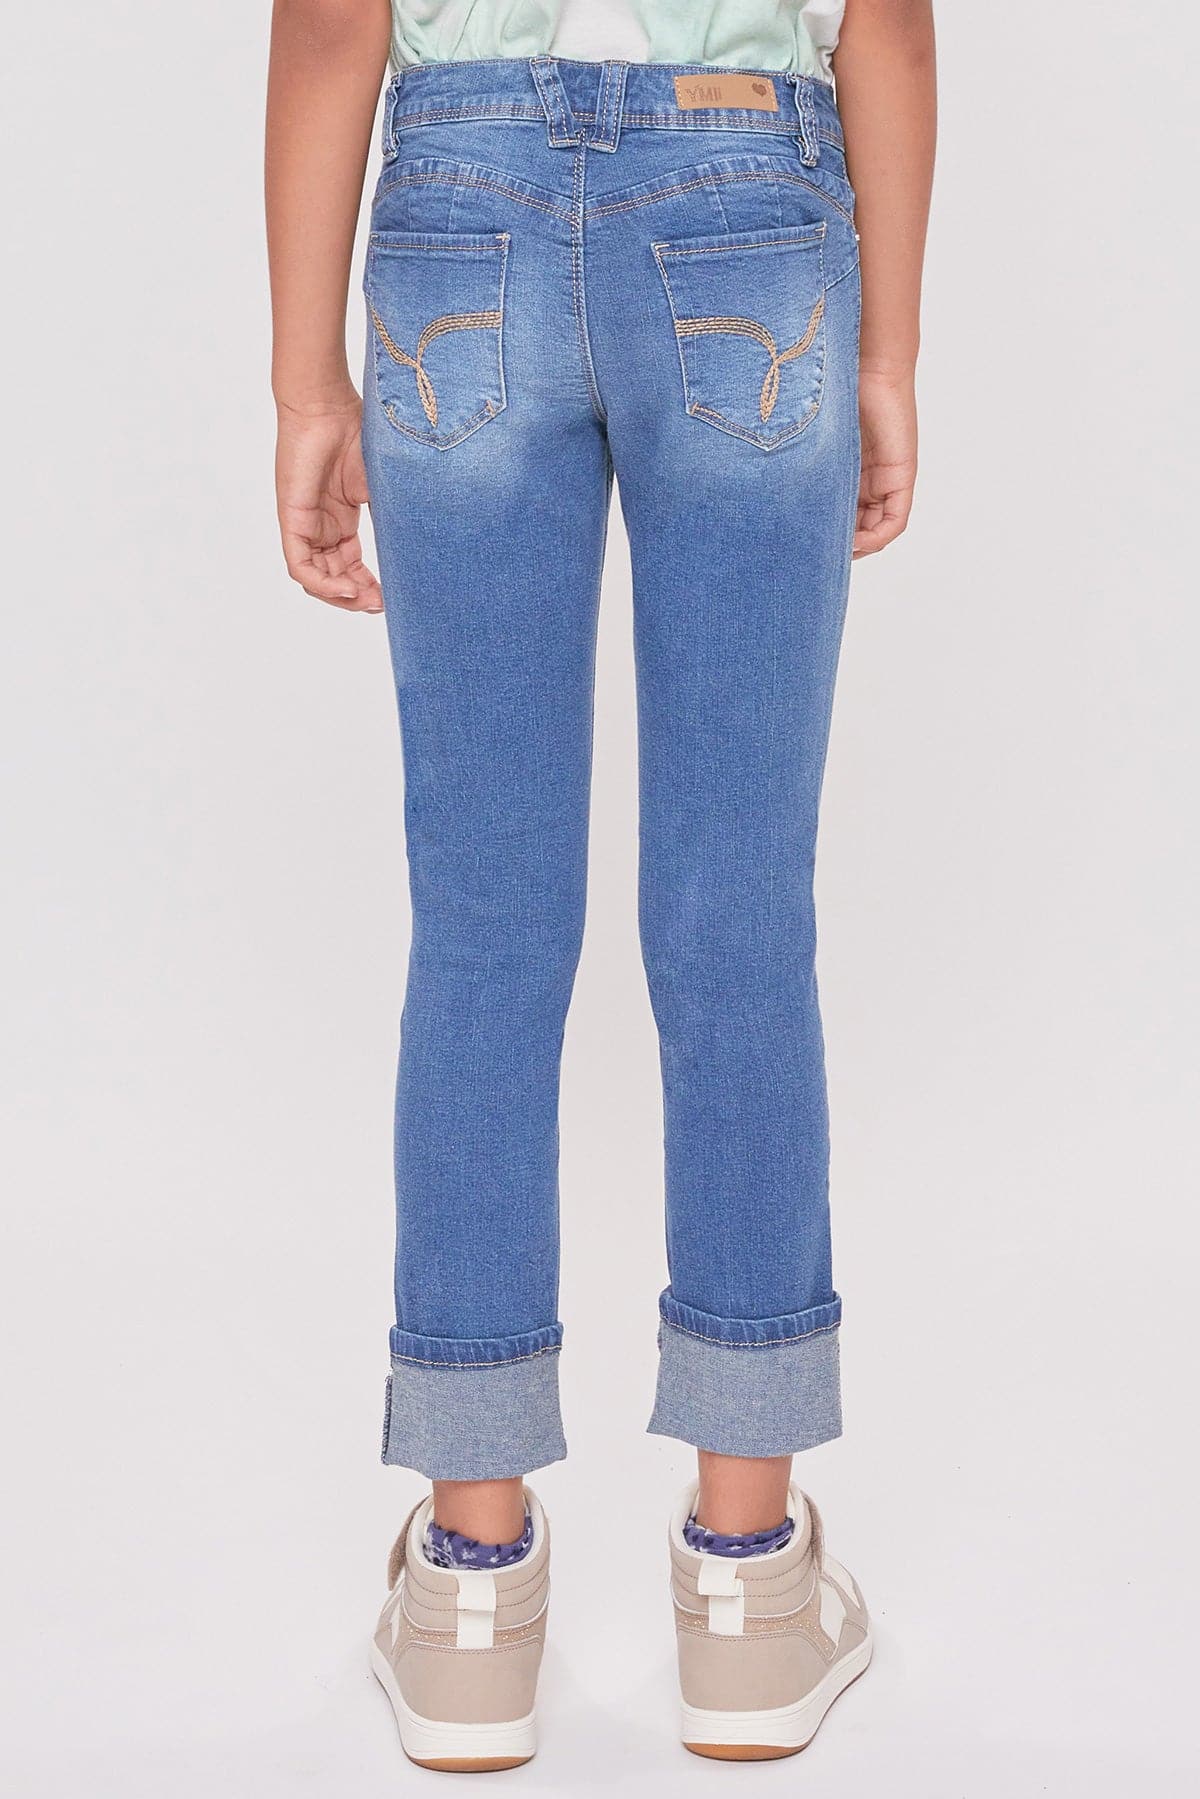 Girls WannaBettaFit Cuff Skinny Jeans